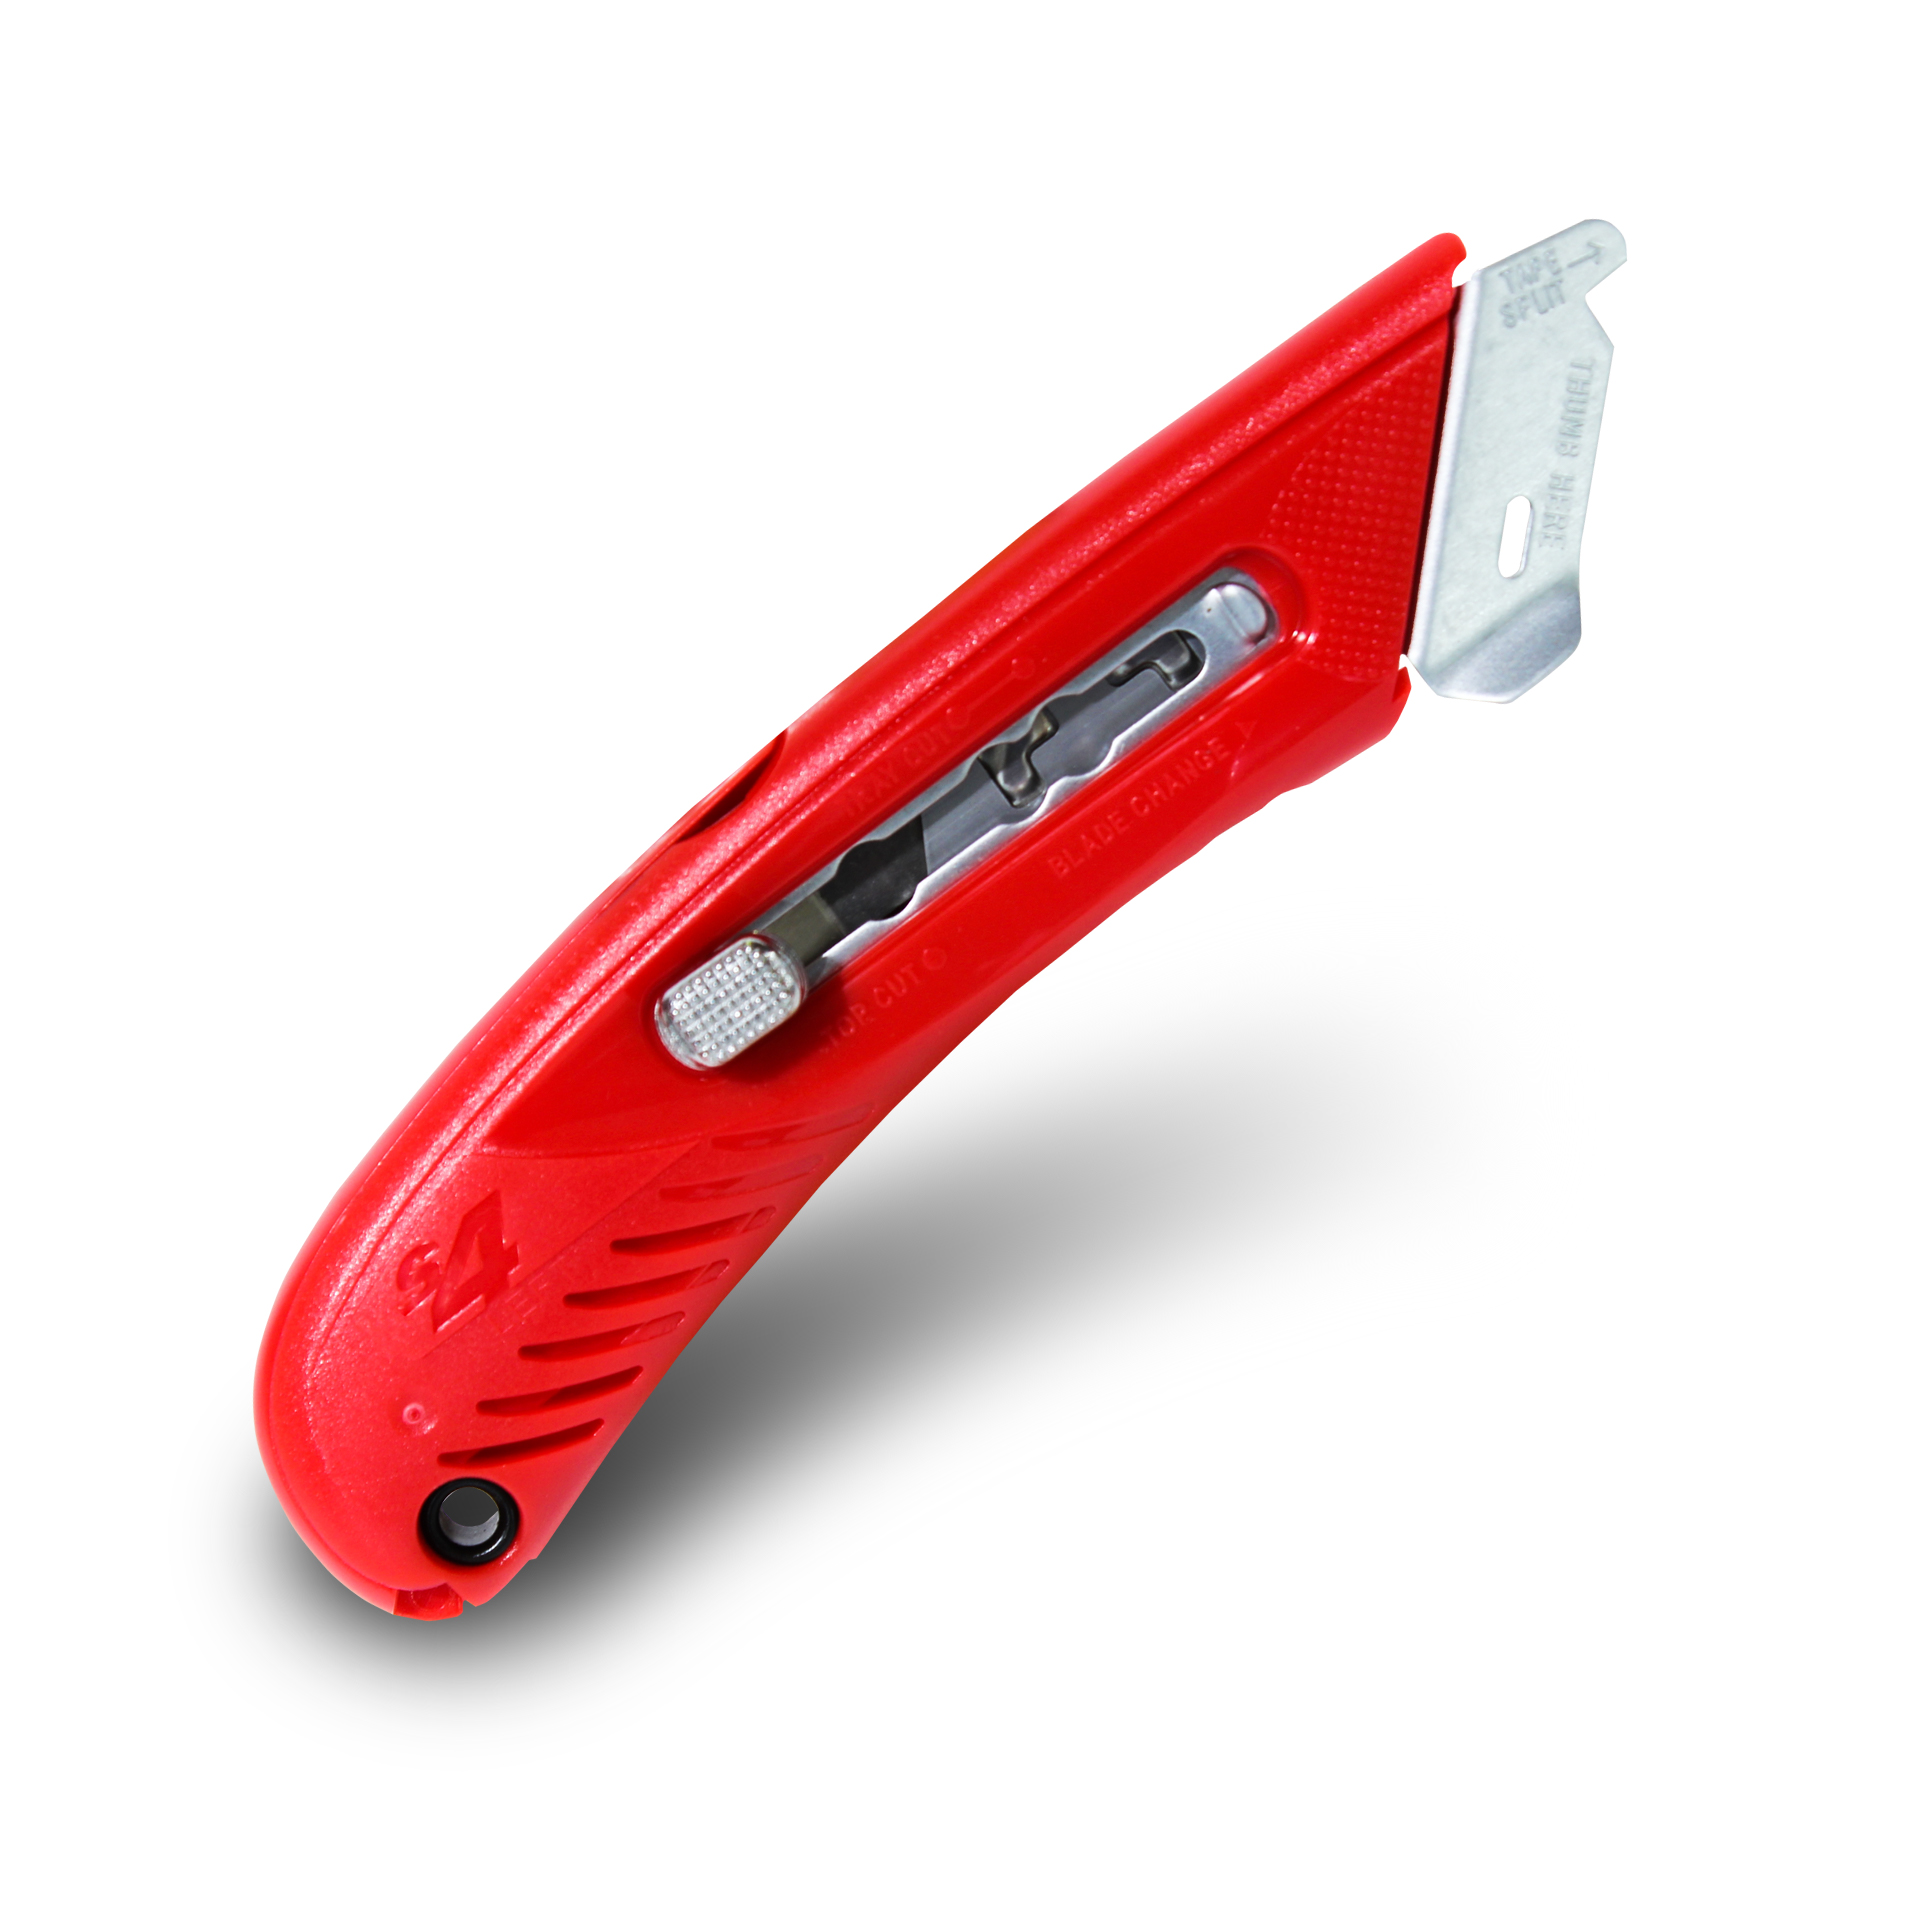 คัตเตอร์นิรภัยอเนกประสงค์ PHC S4 Safety Cutter สีแดง